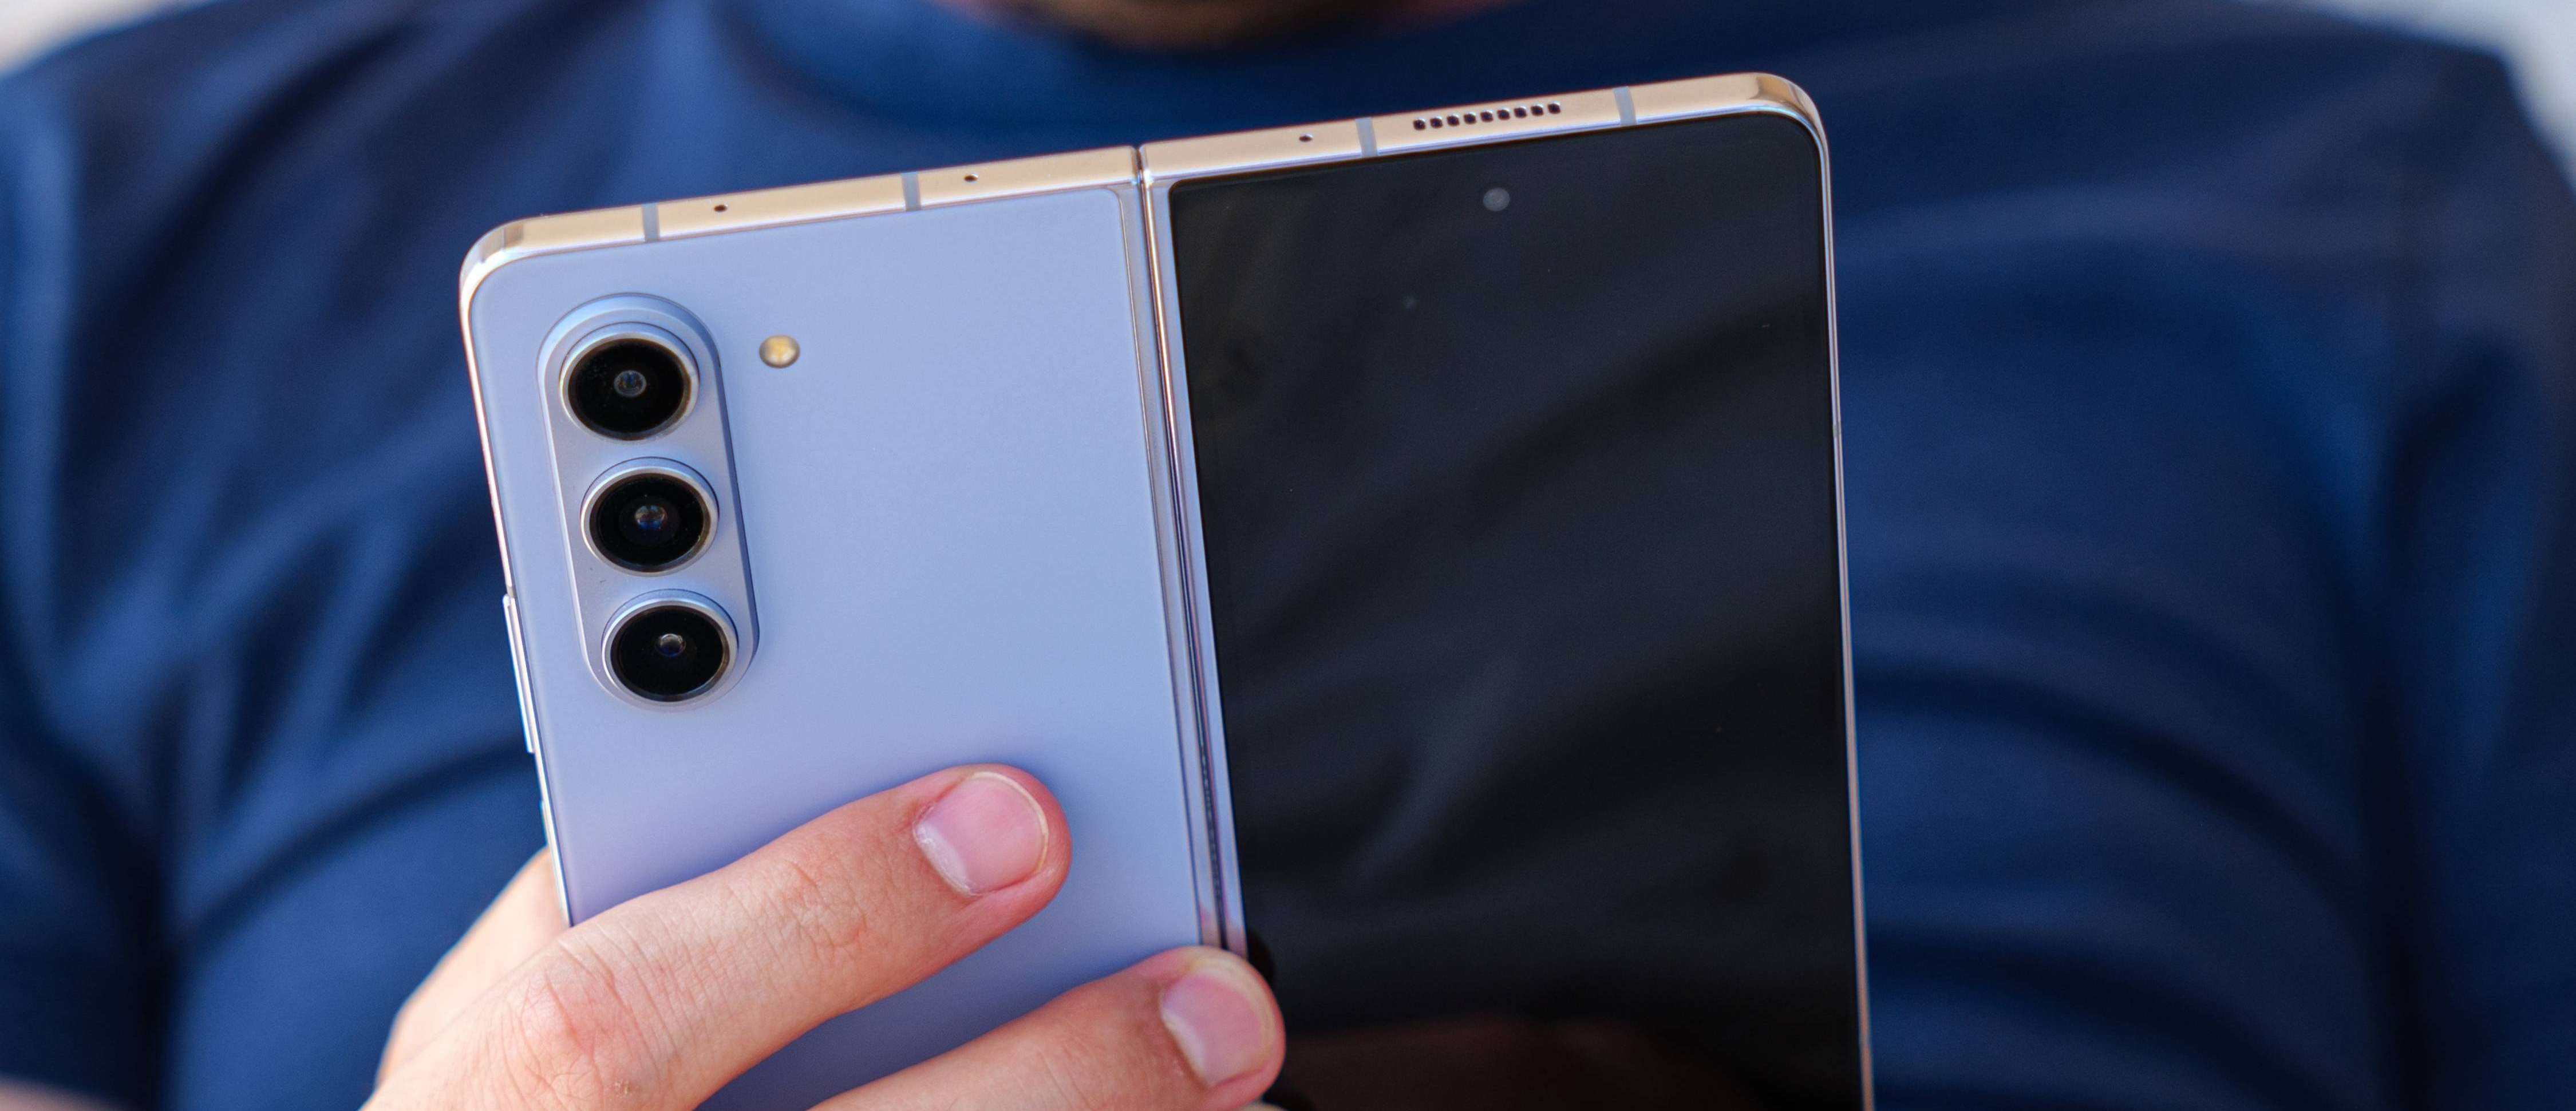 Samsung Galaxy Z Fold6: what we know so far